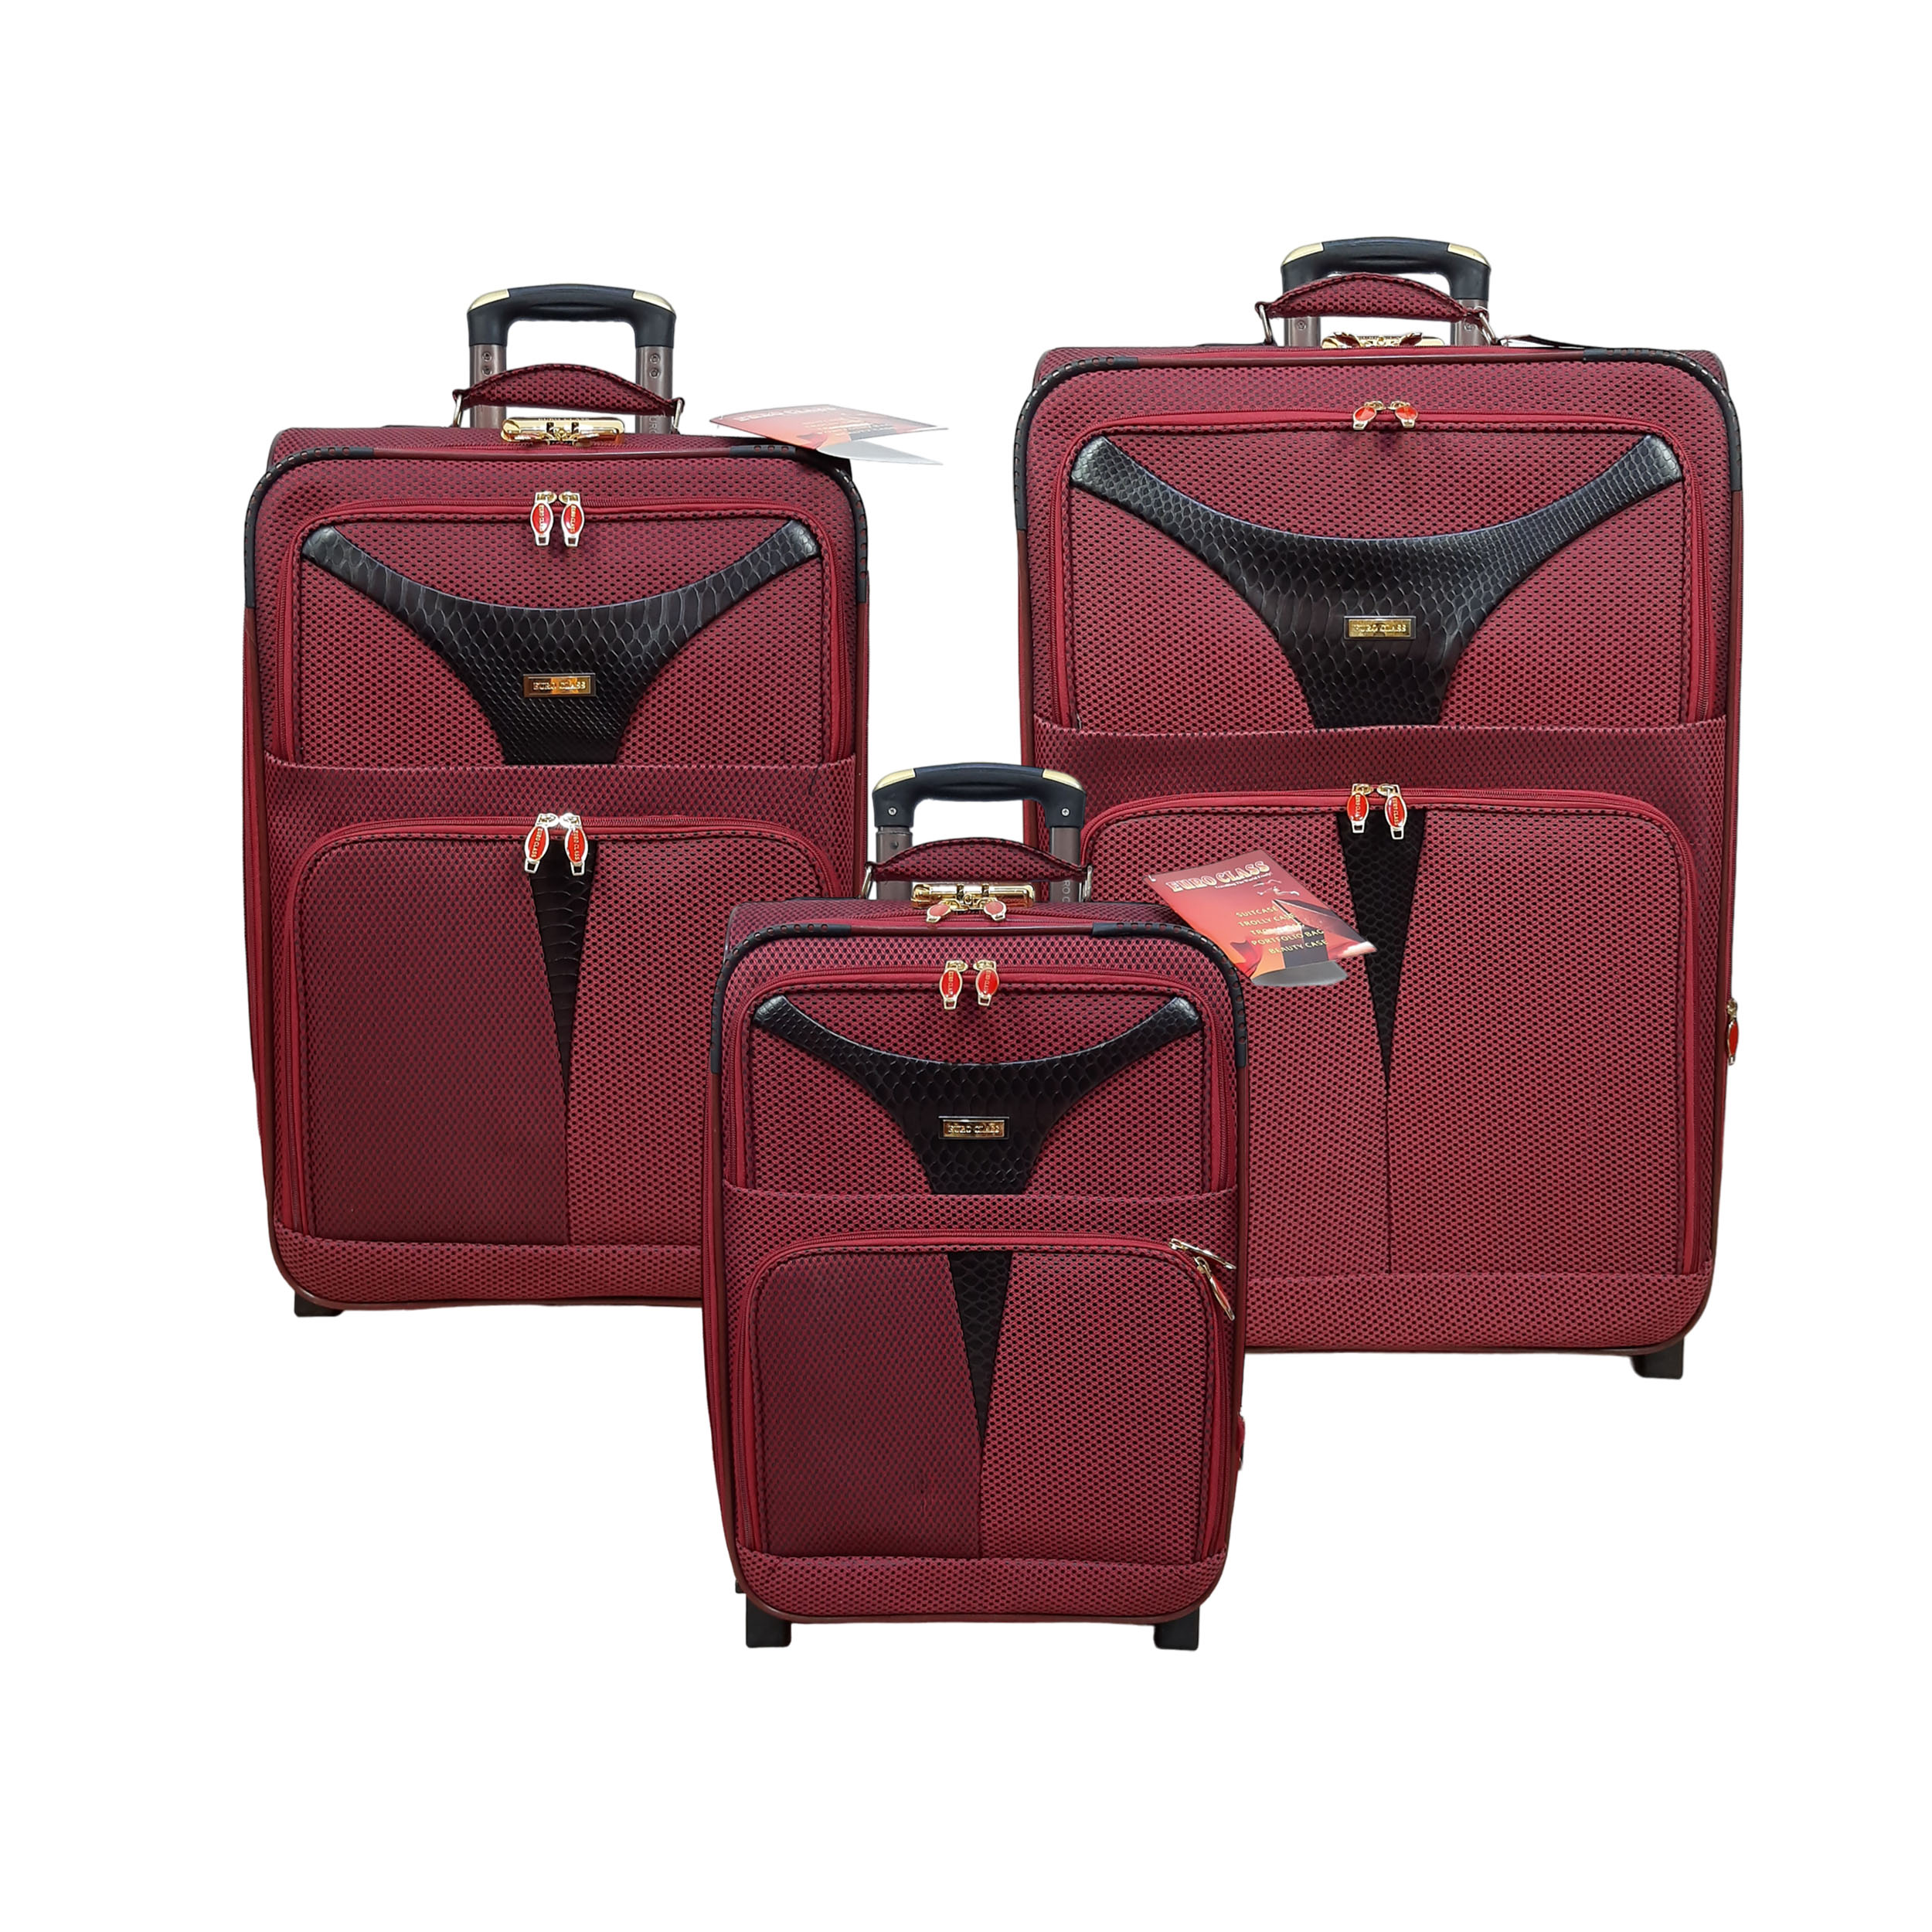 نکته خرید - قیمت روز مجموعه سه عددی چمدان یورو کلاس مدل G9050 خرید